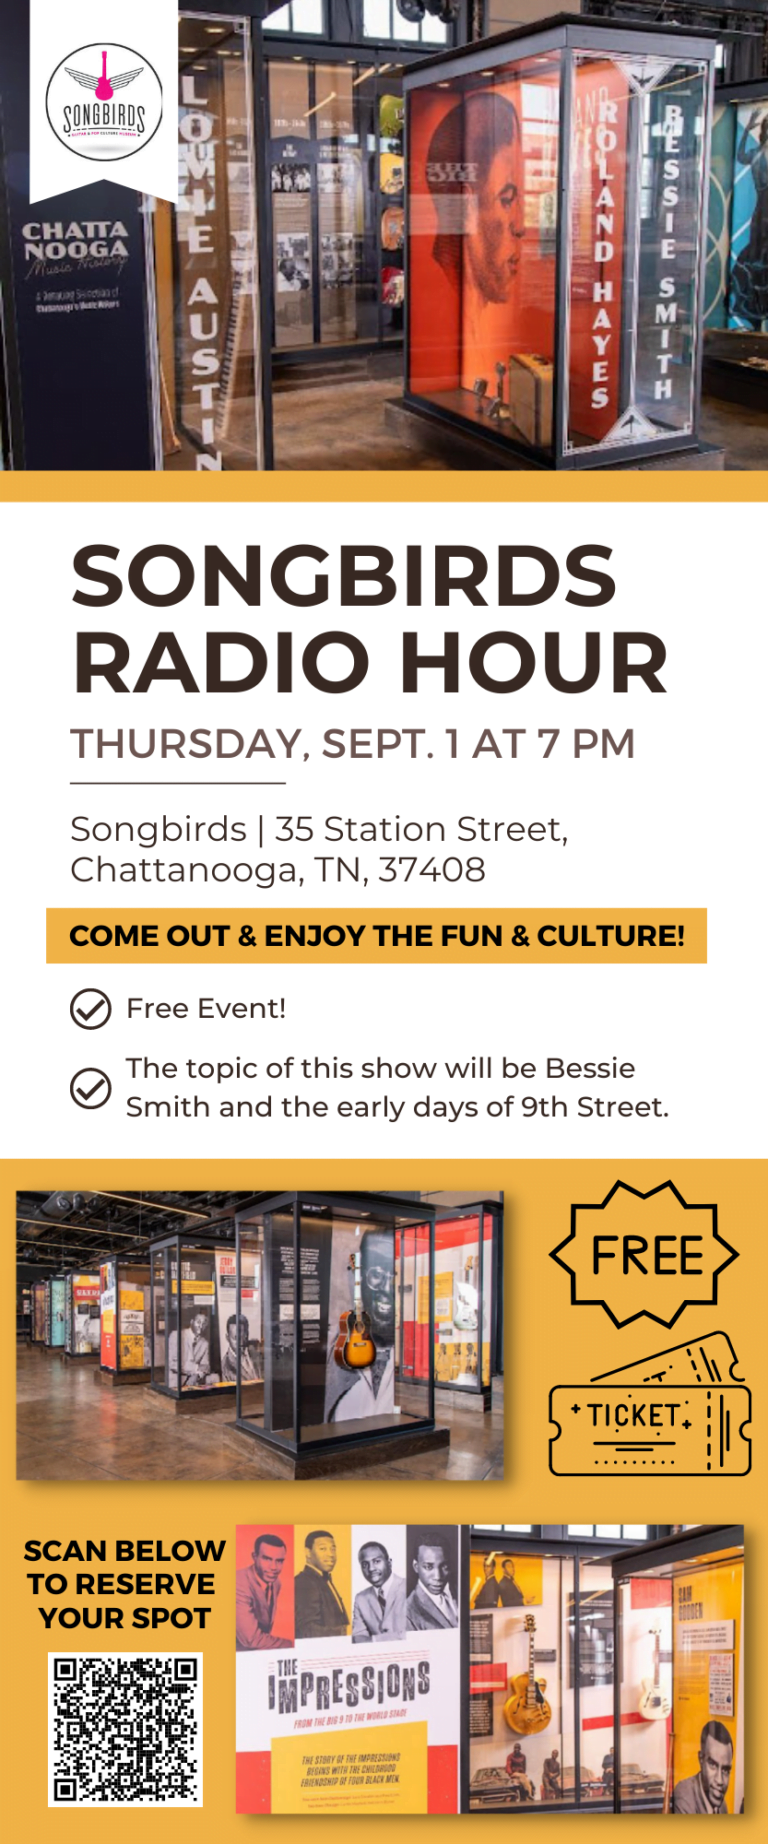 Songbirds Radio Hour